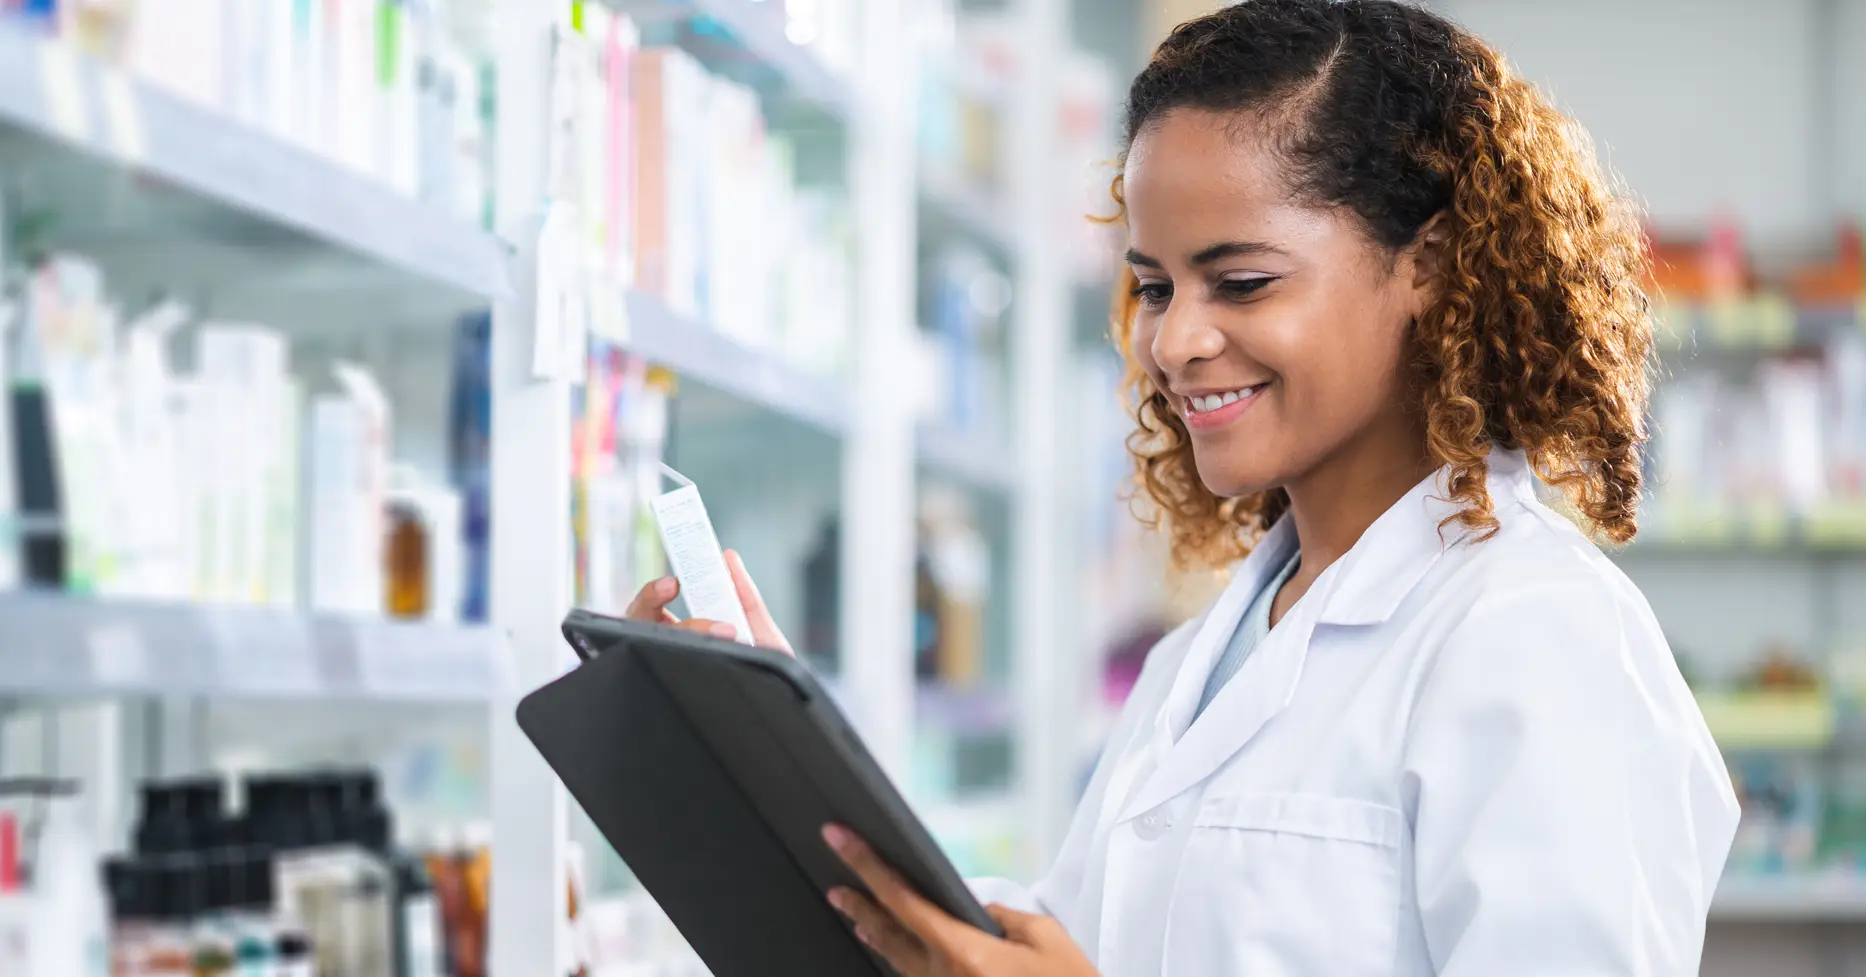 Pharmacist checking inventory on shelves in pharmacy